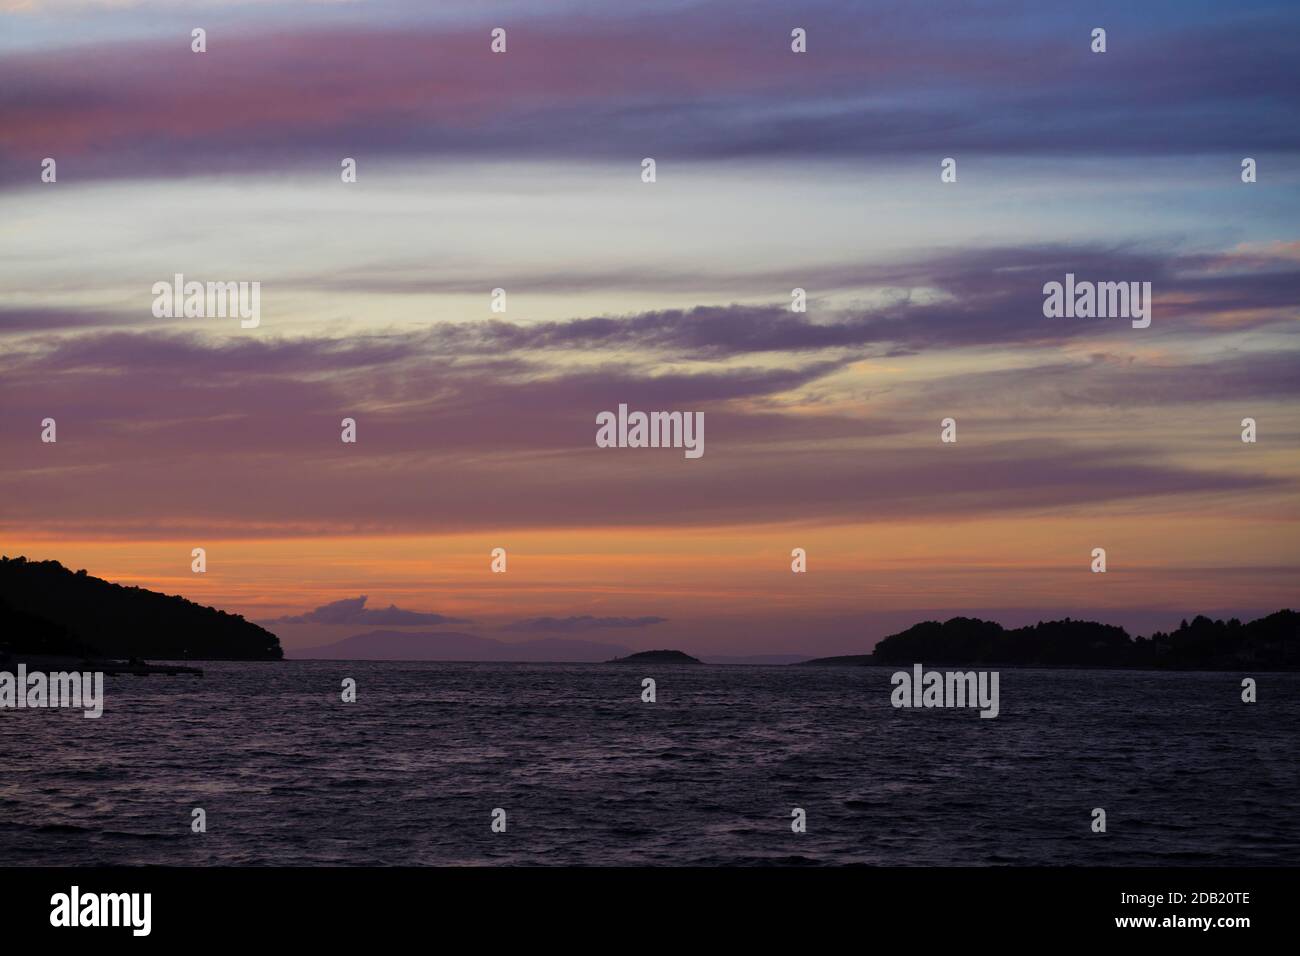 Twilight in Vela Luka, Korcula island, Croatia Stock Photo